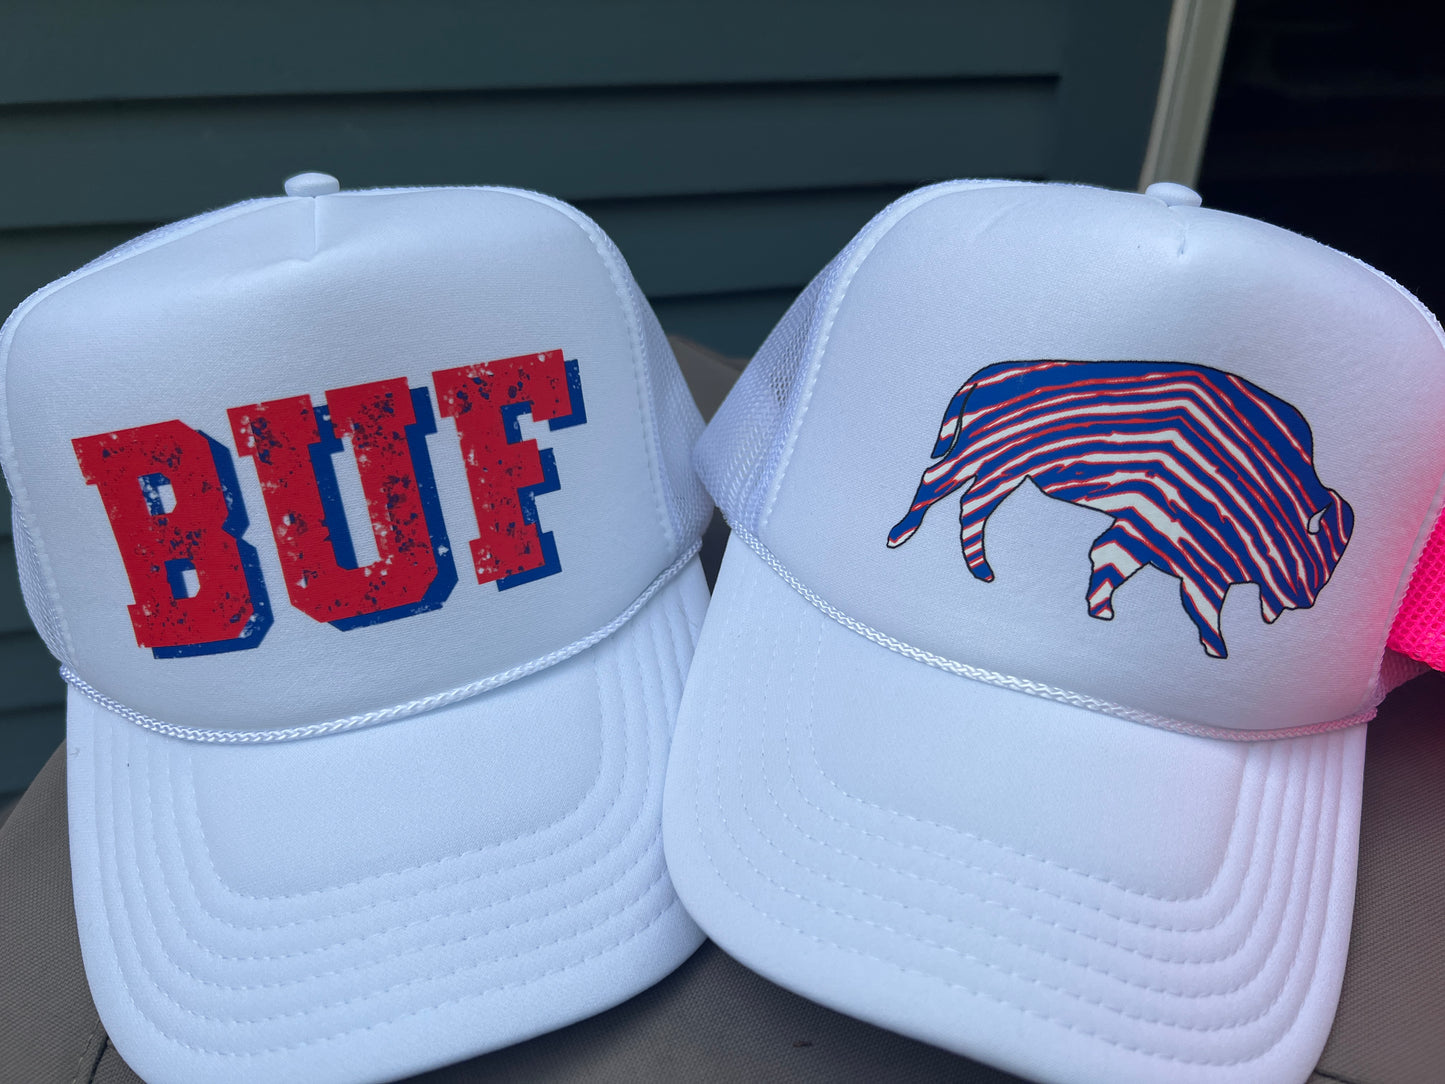 Buffalo trucker hat